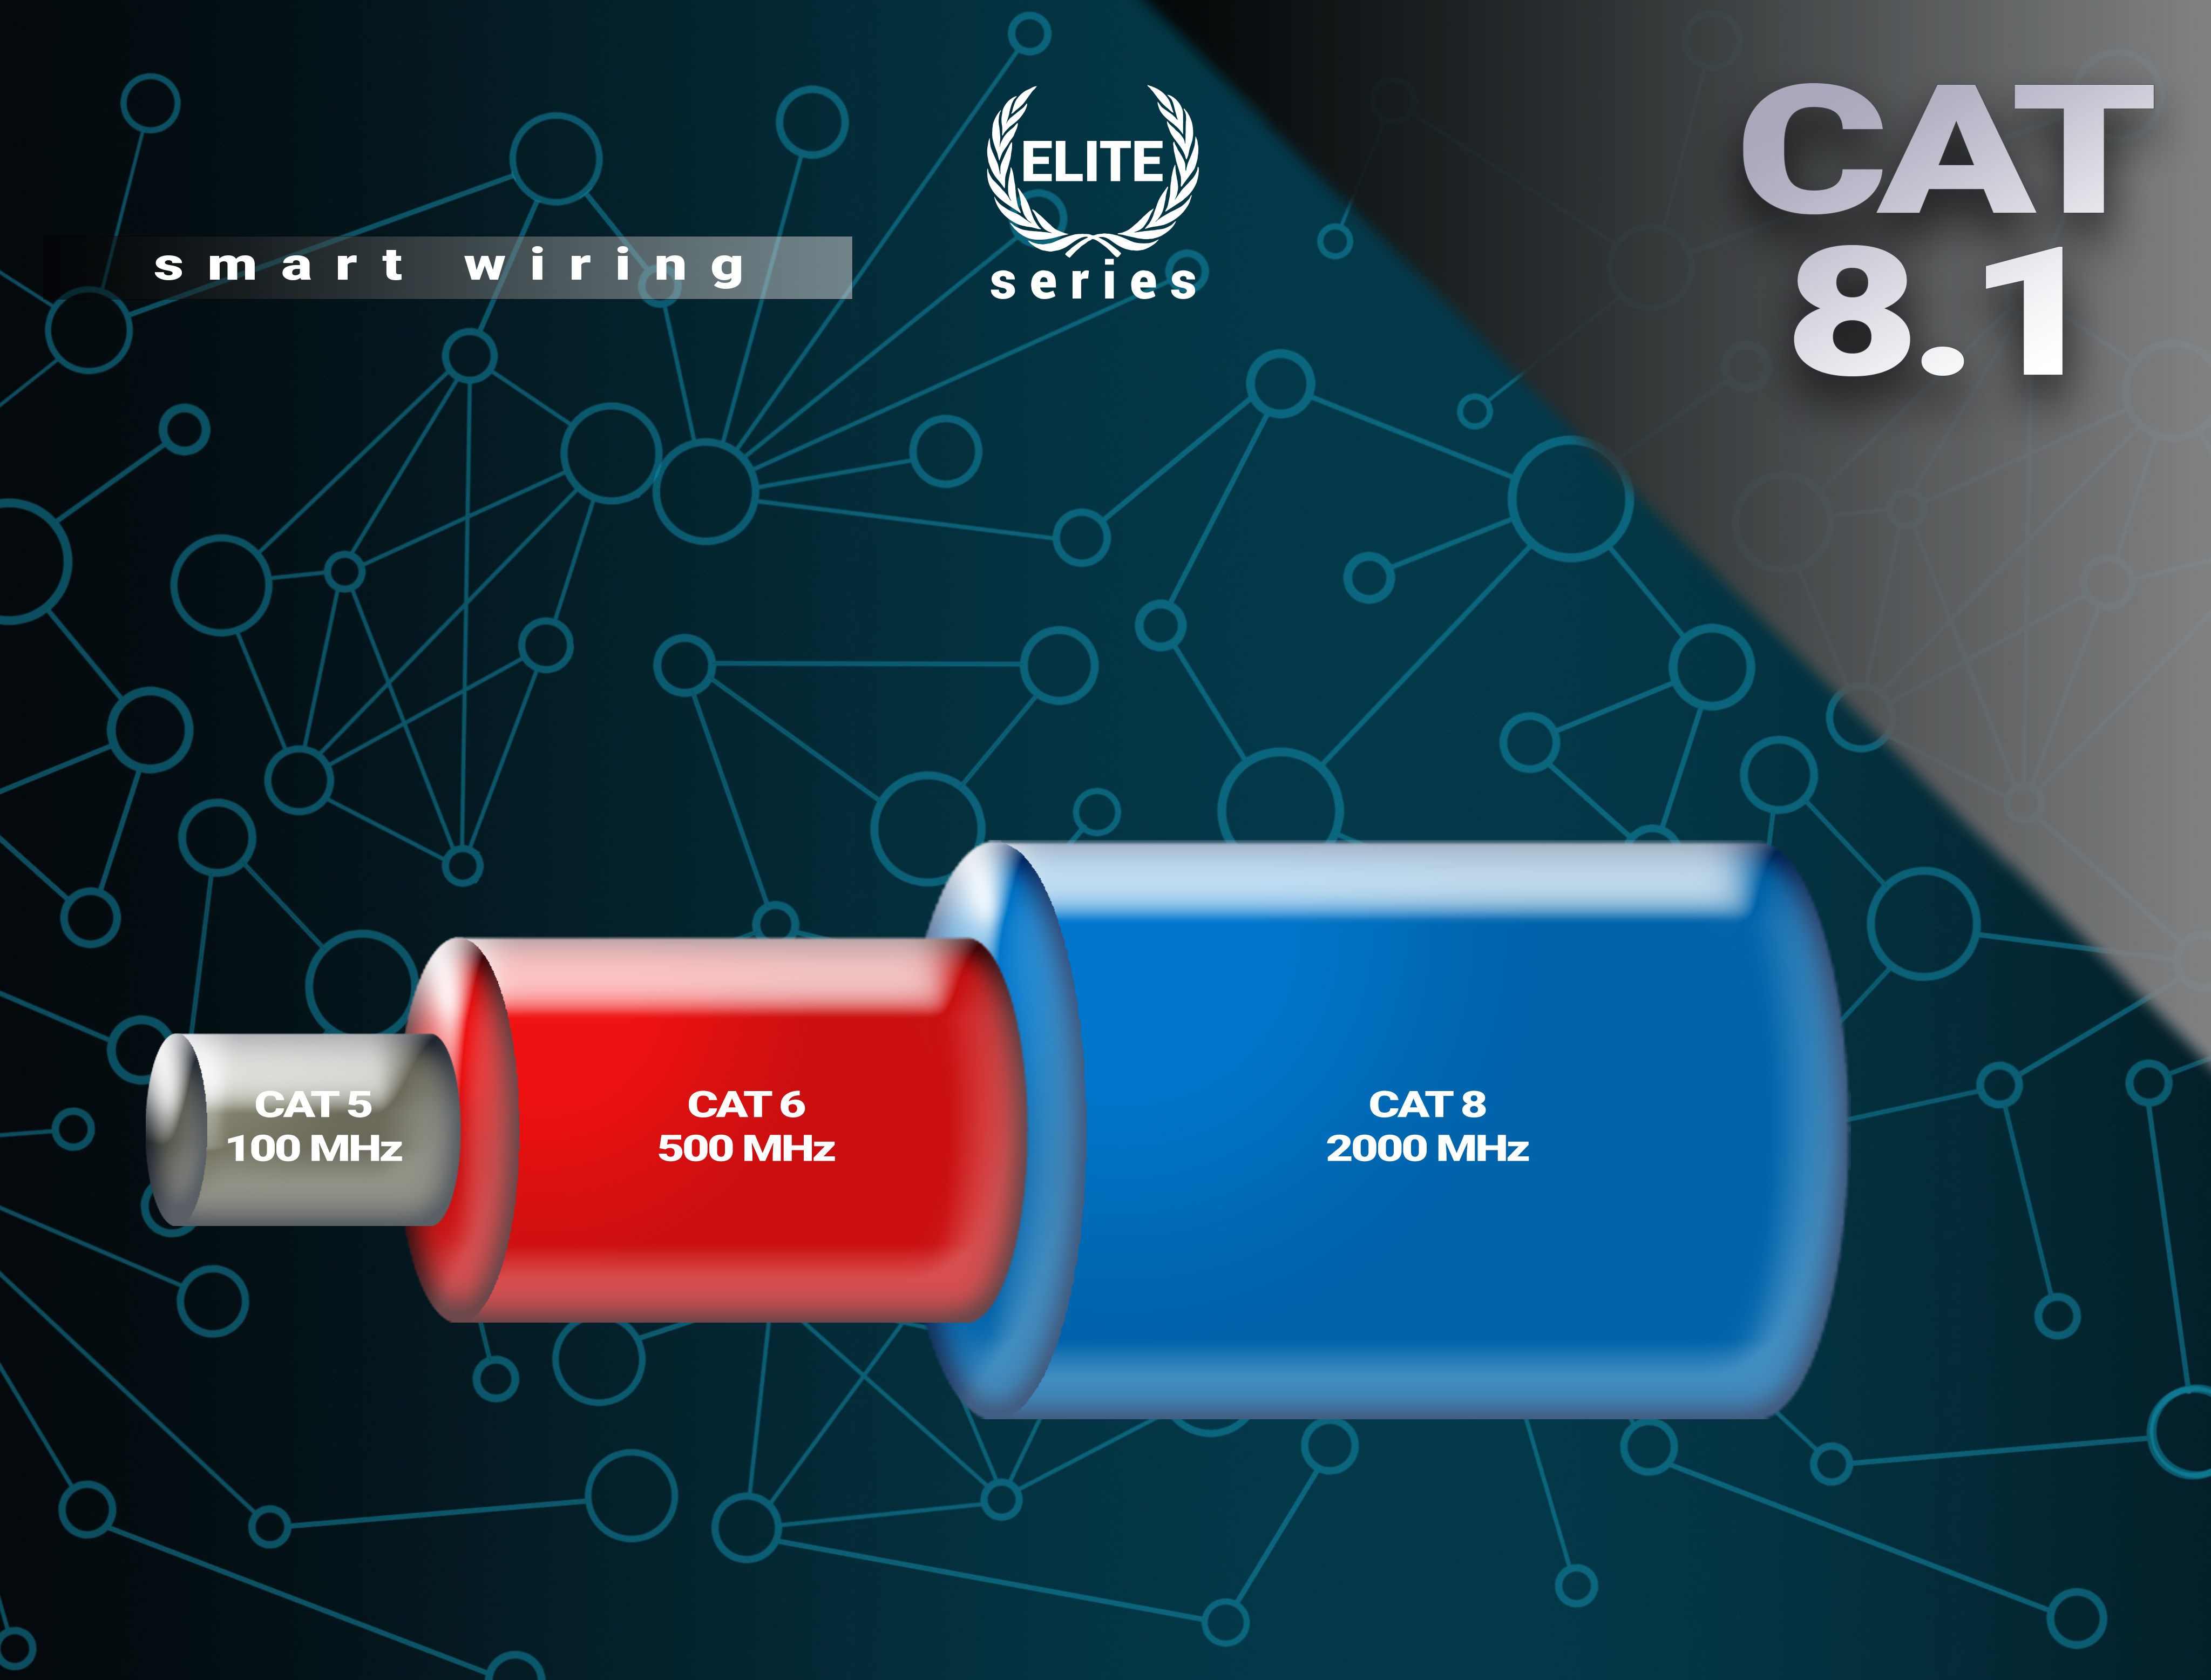 BIVANI Premium 40 Gbps LAN Kabel 8.1 m Elite-Series, - 15 Netzwerkkabel, CAT